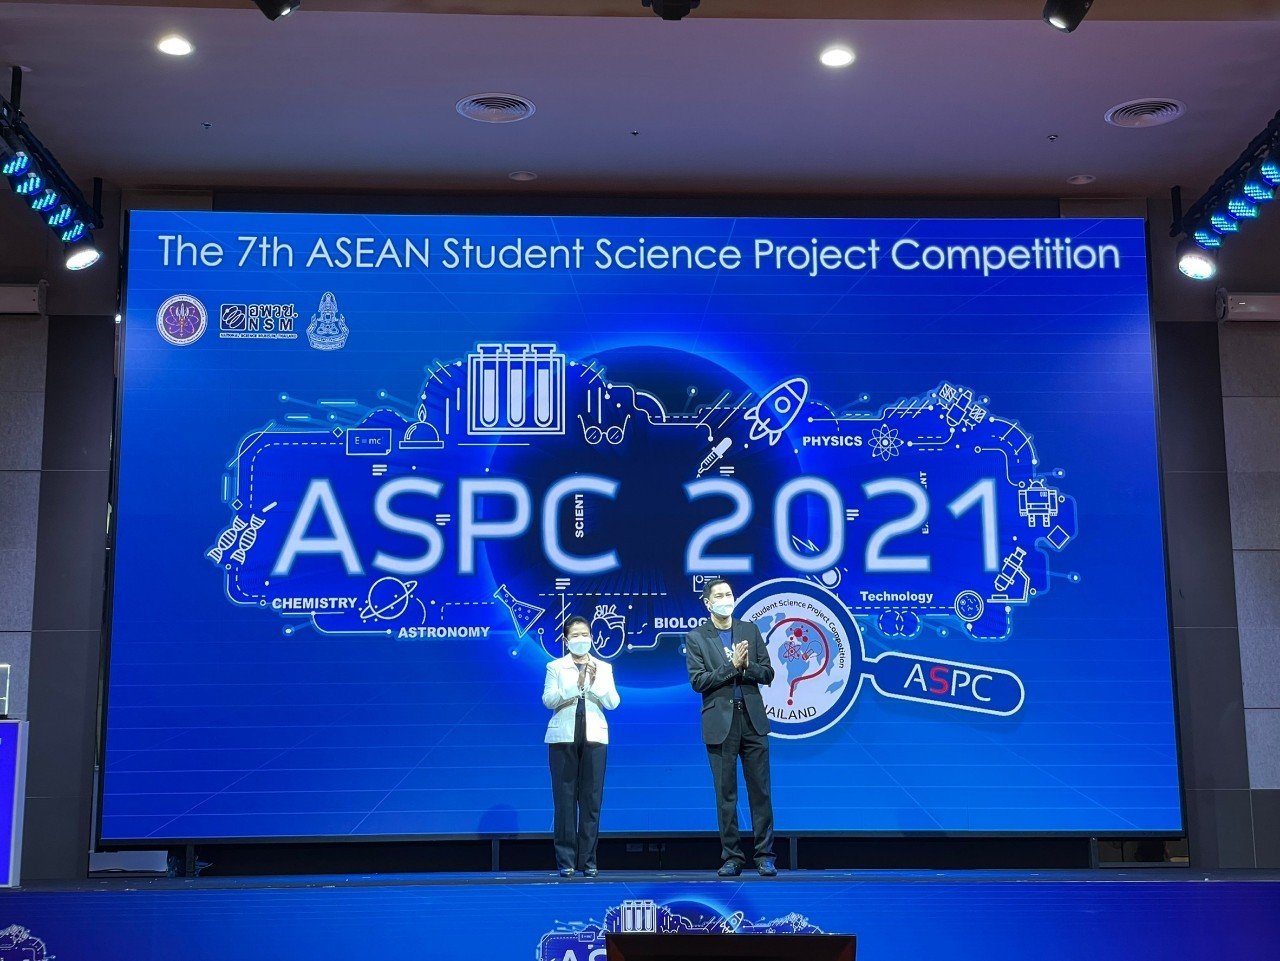 อพวช. ร่วมกับ สมาคมวิทย์ ฯ จัดพิธีปิดและประกาศผล  “การแข่งขันโครงงานวิทยาศาสตร์เยาวชนกลุ่มประเทศอาเซียน”  The 7th ASEAN Student Science Project Competition (ASPC 2021) รูปแบบออนไลน์